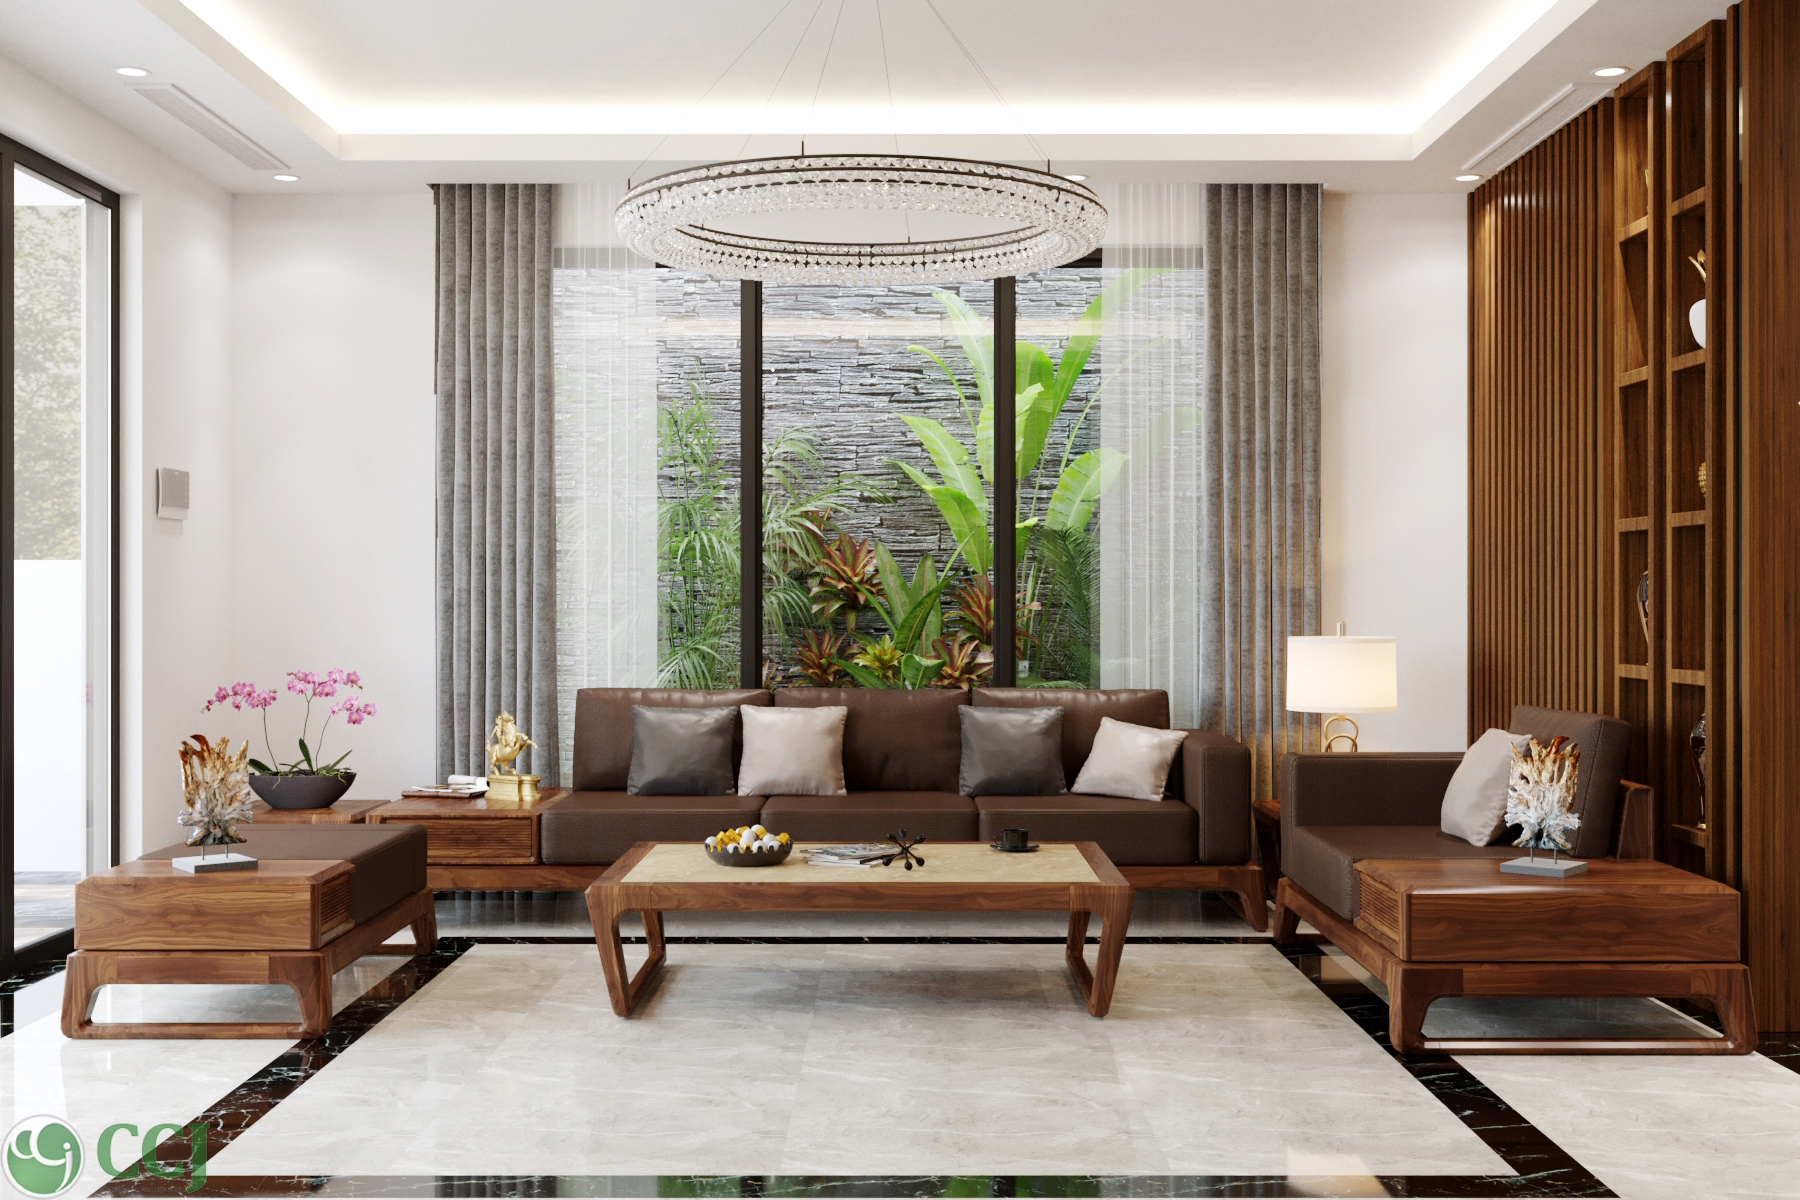 Thiết kế nội thất Nhà tại Quảng Ninh nhà lô anh Chung 1627035041 3